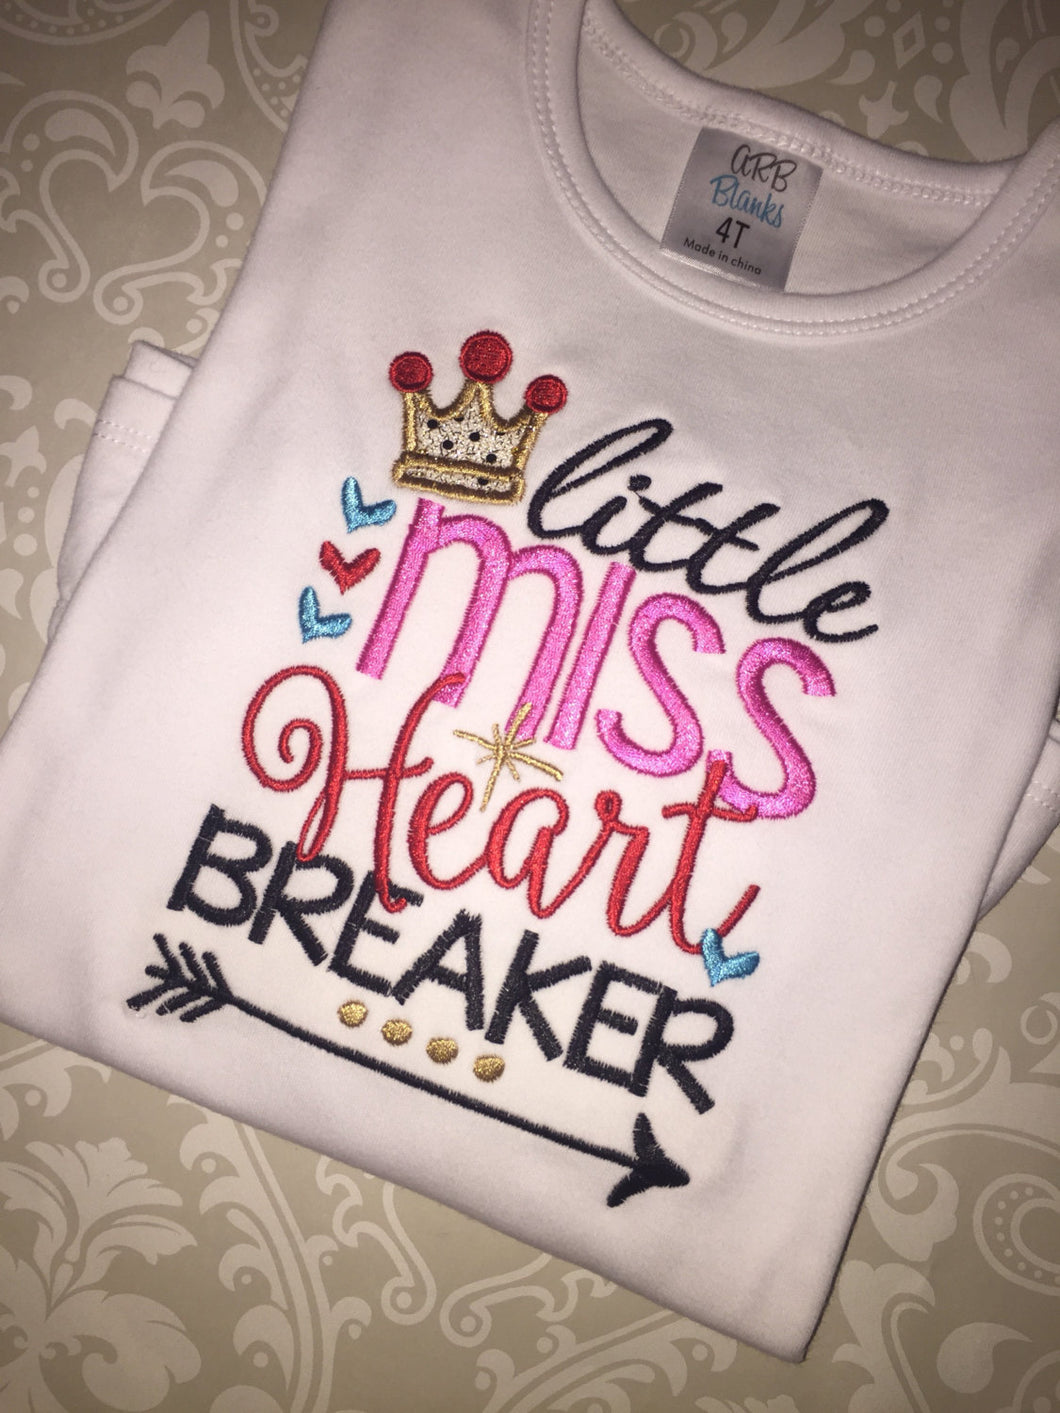 Little Miss Heart Breaker tee